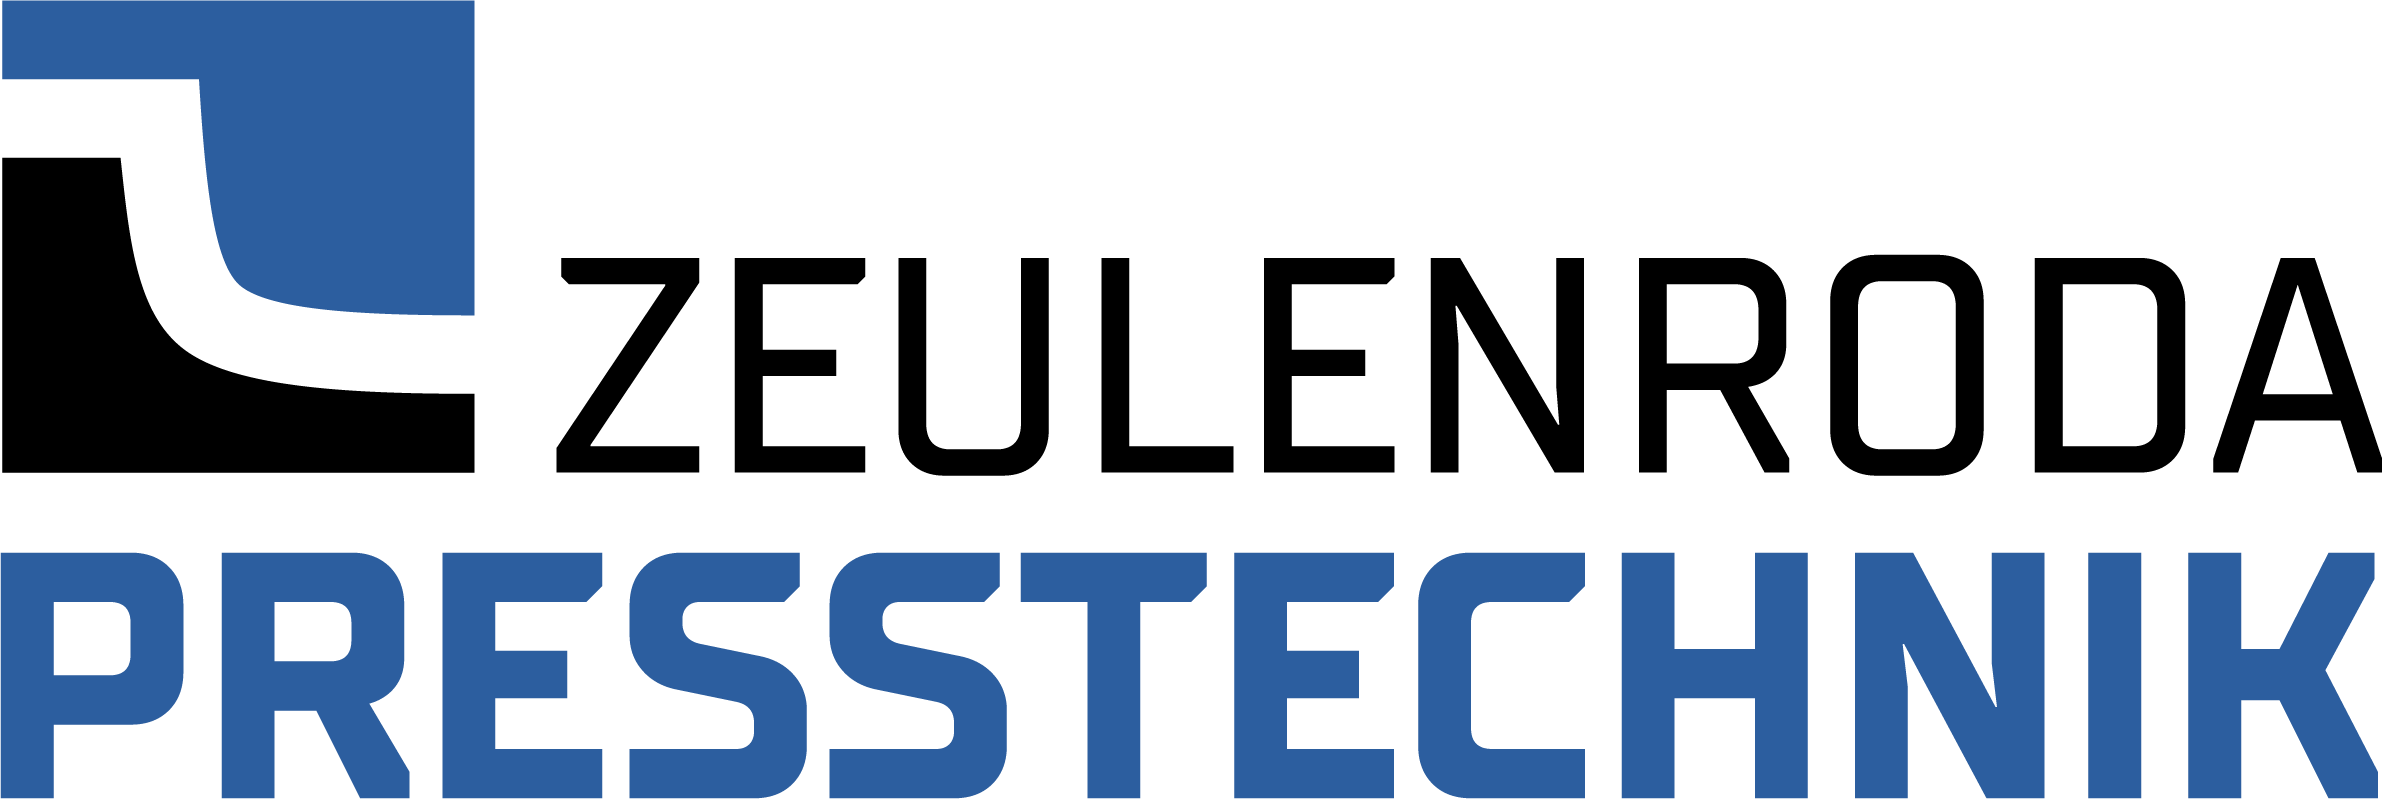 Logo Zeulenroda Presstechnik GmbH